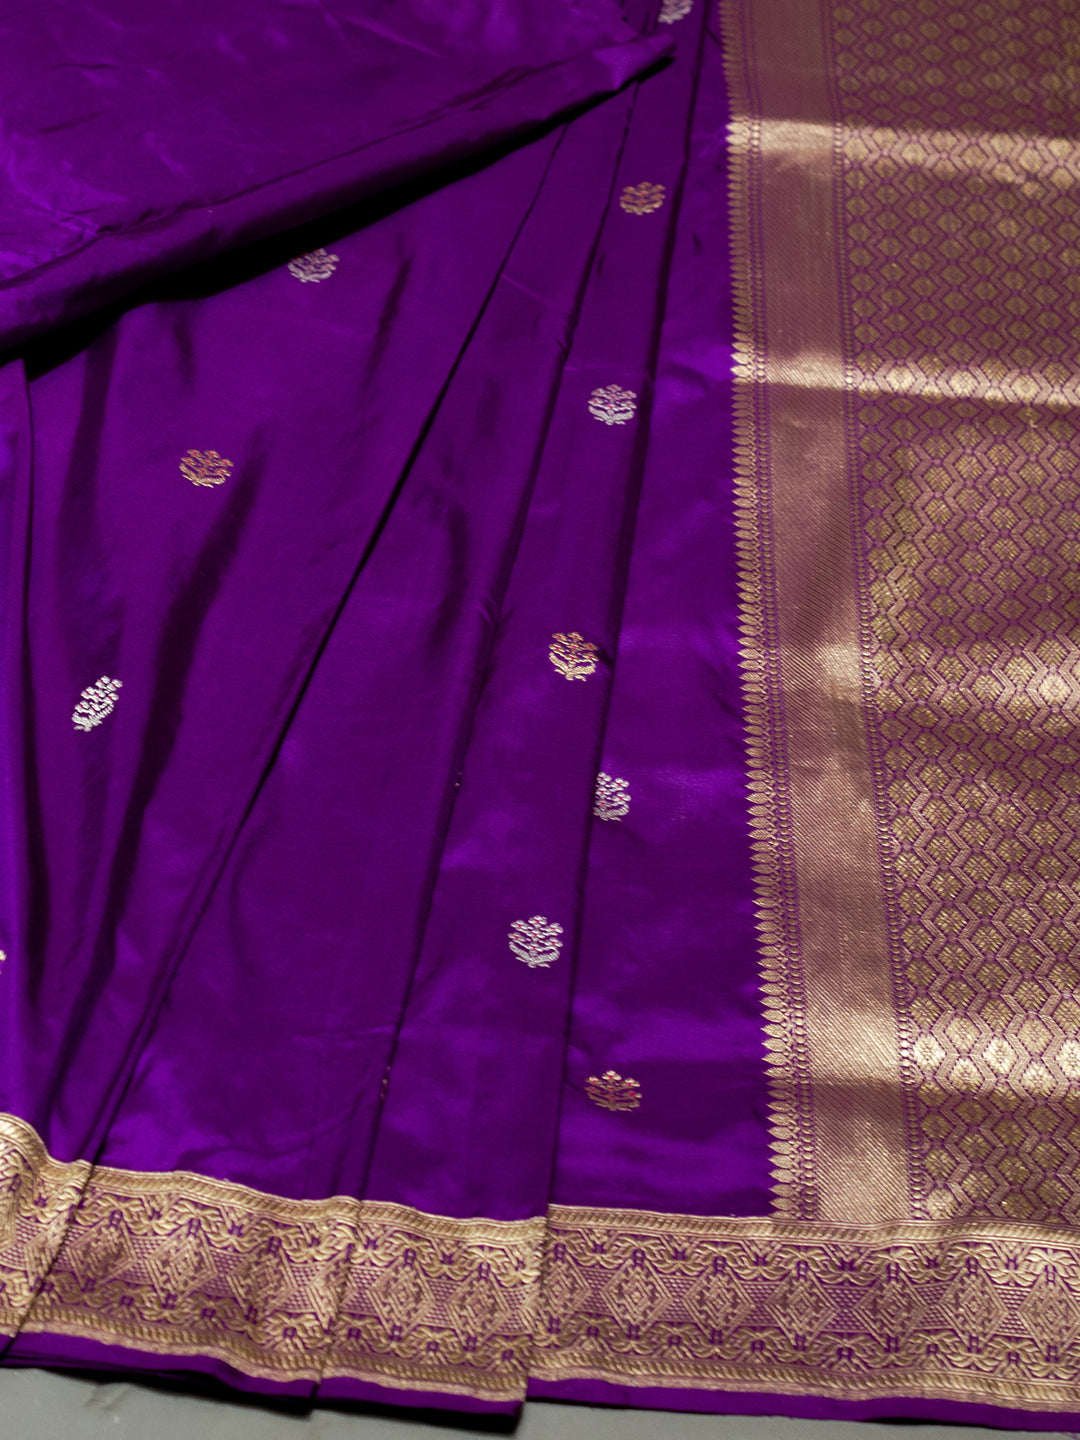 Handwoven Banarasi Katan Silk Saree